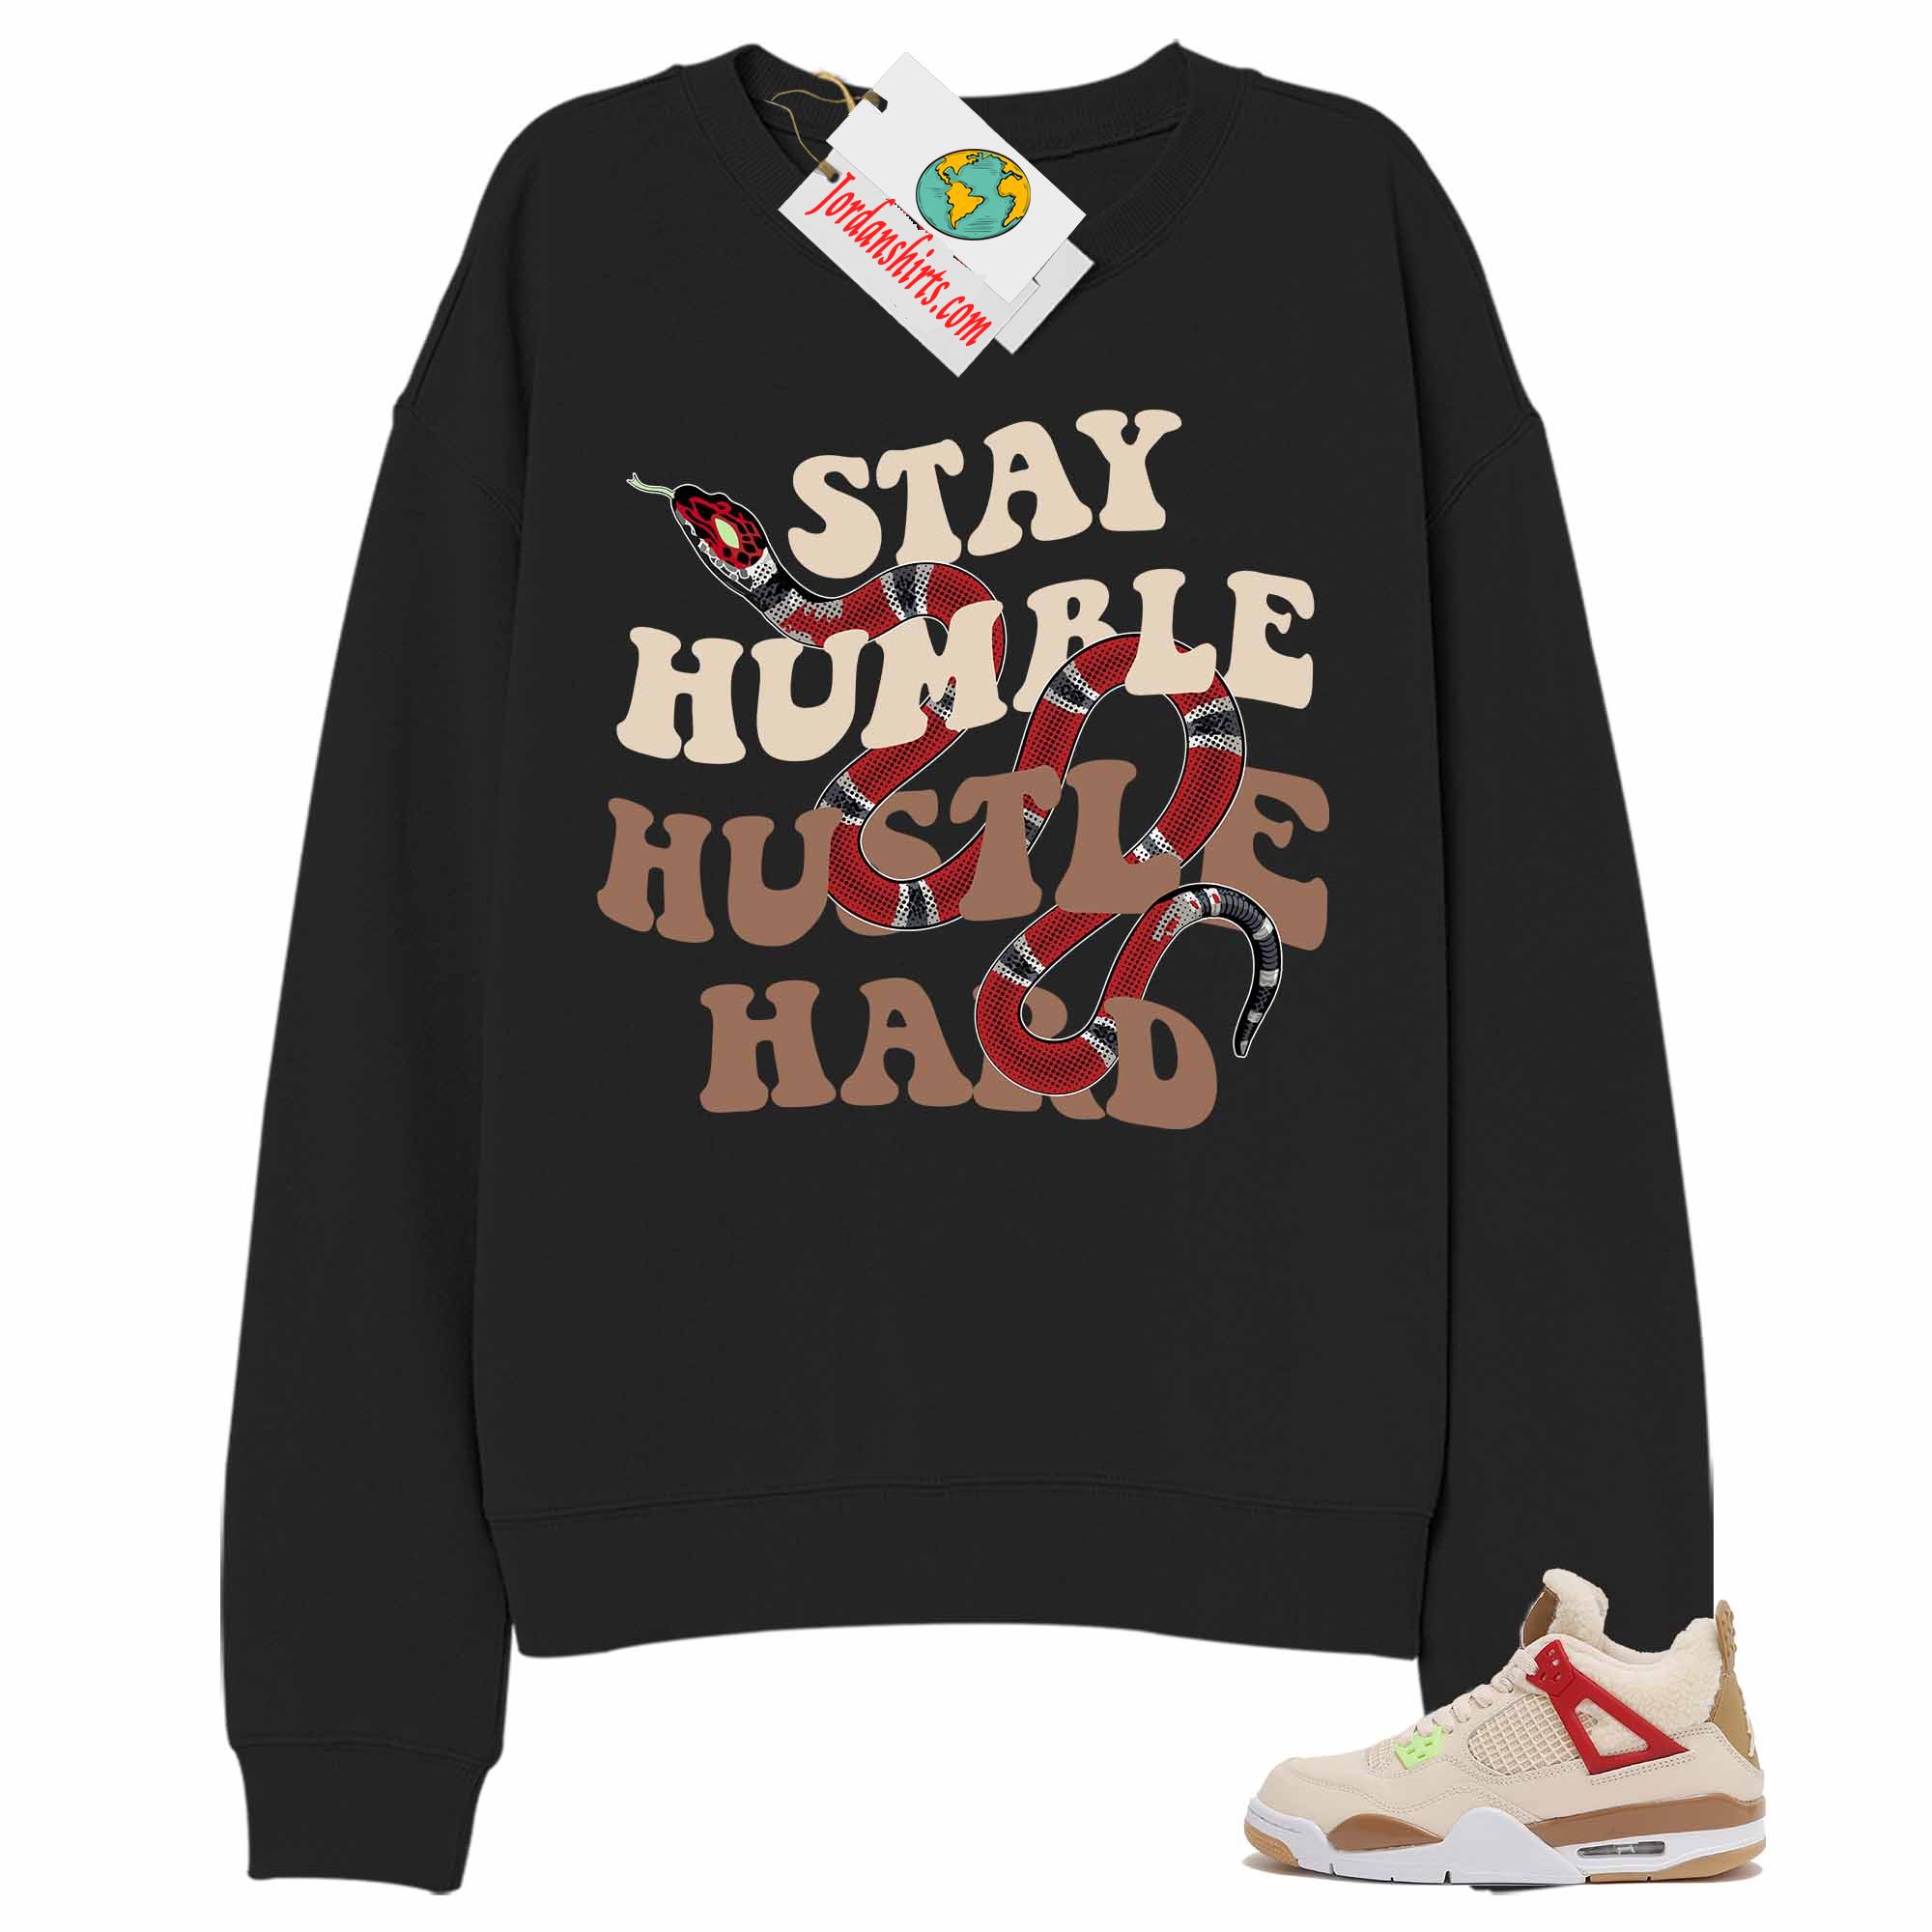 Jordan 4 Sweatshirt, Stay Humble Hustle Hard King Snake Black Sweatshirt Air Jordan 4 Wild Things 4s Full Size Up To 5xl